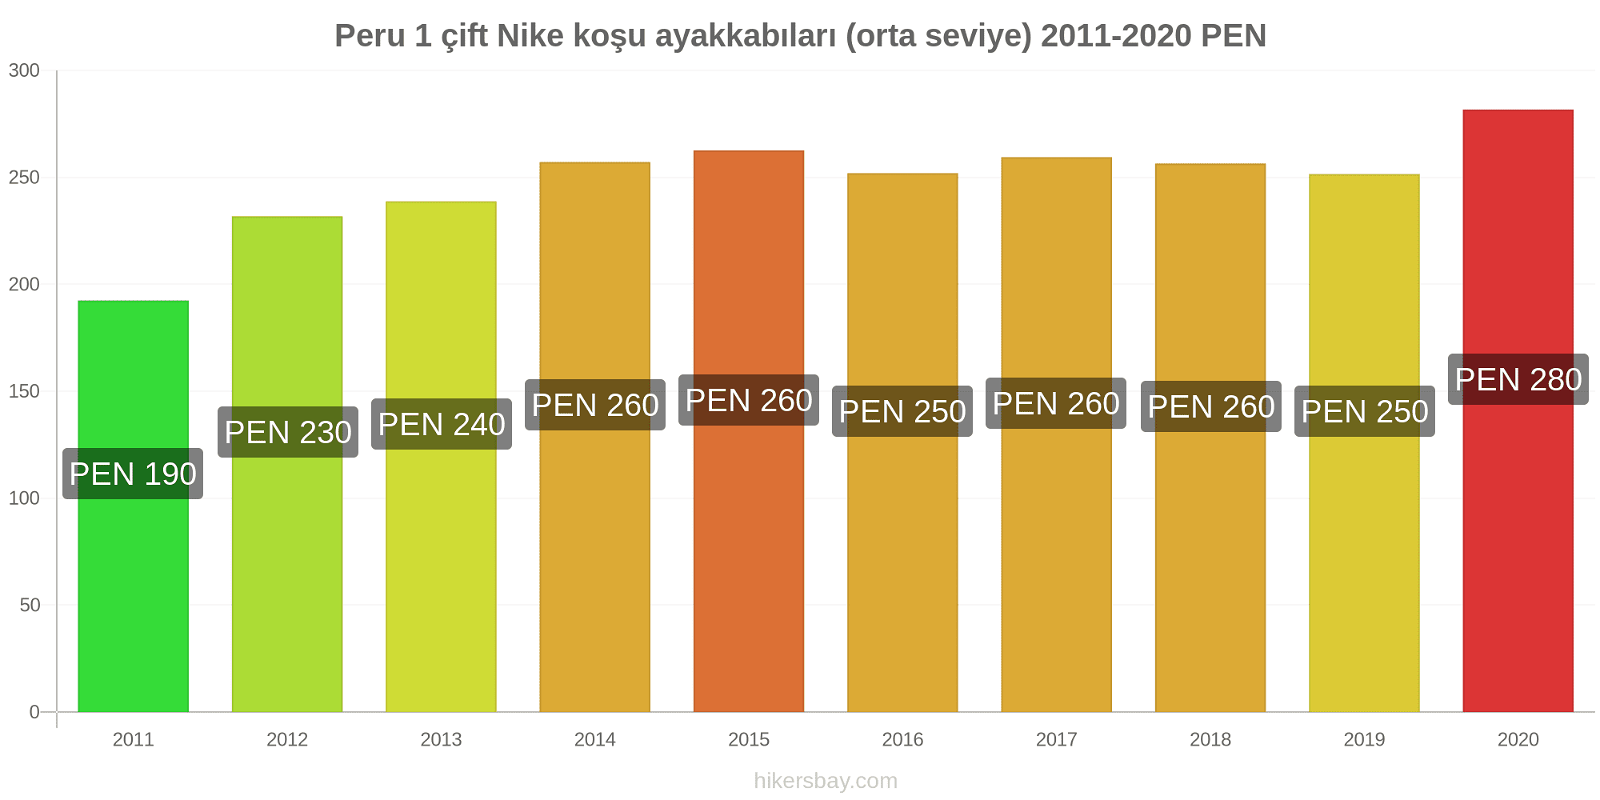 Peru fiyat değişiklikleri 1 çift Nike koşu ayakkabıları (orta seviye) hikersbay.com